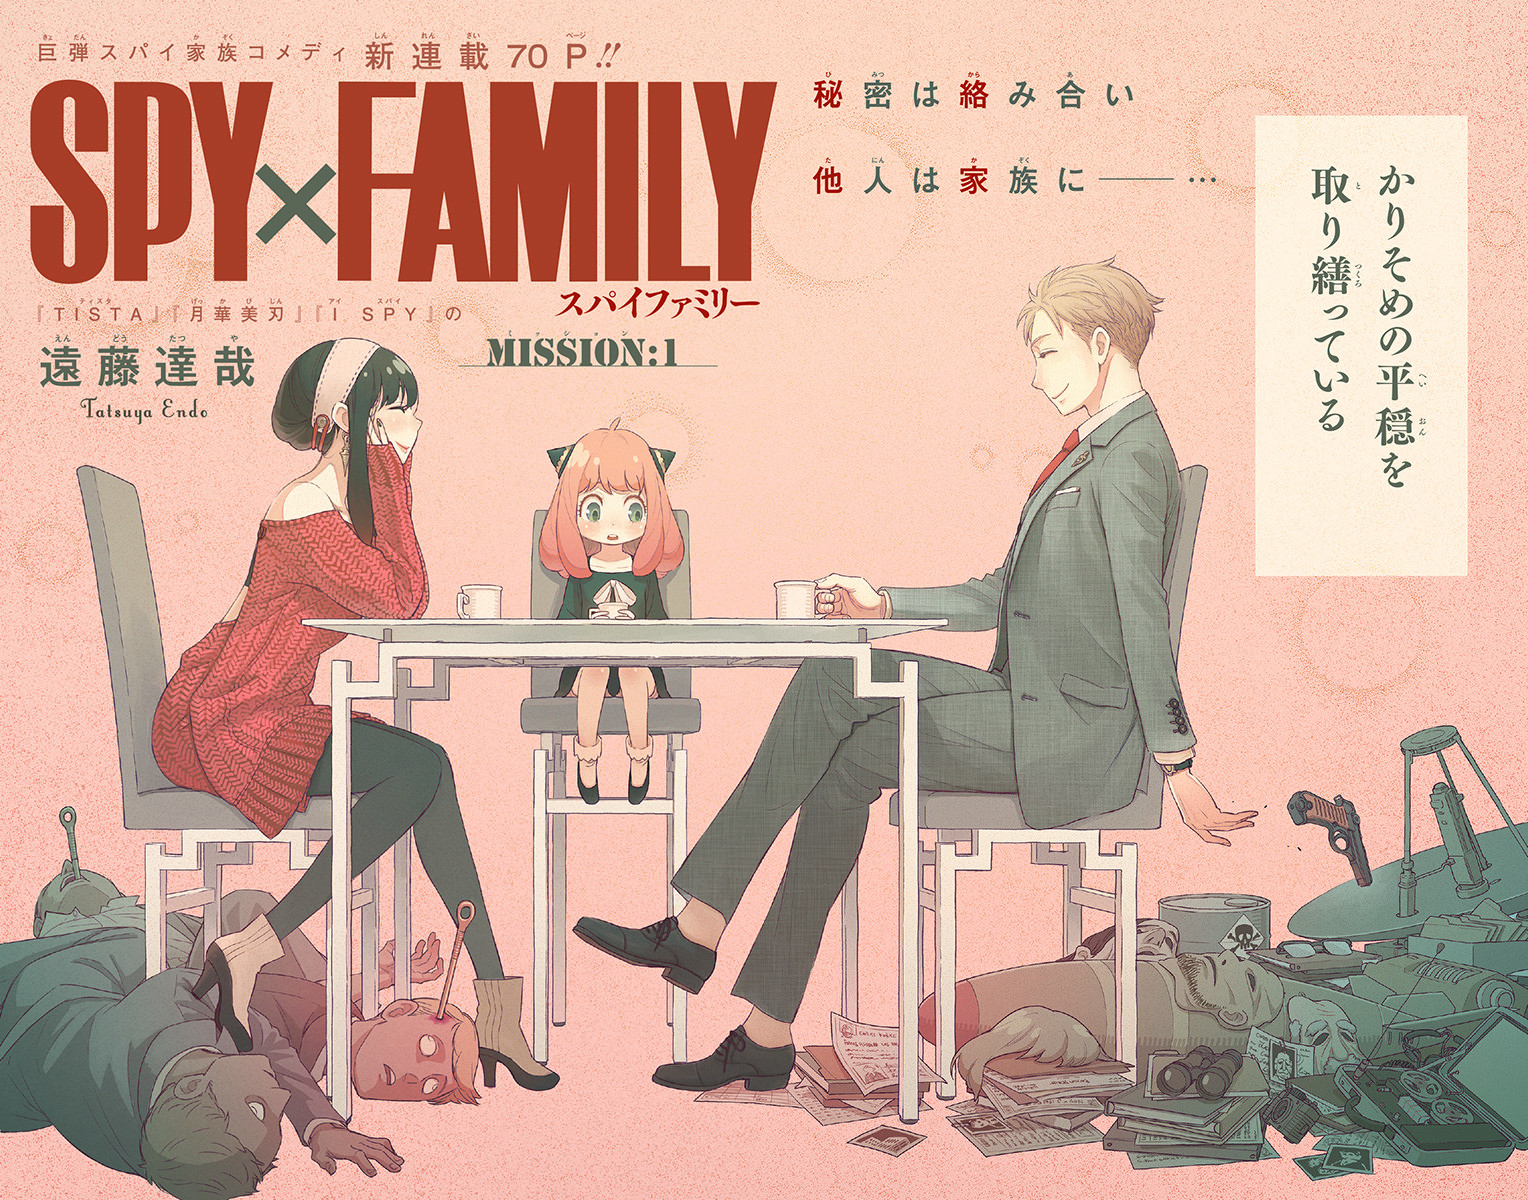 Spy x family tome 9 manga collector